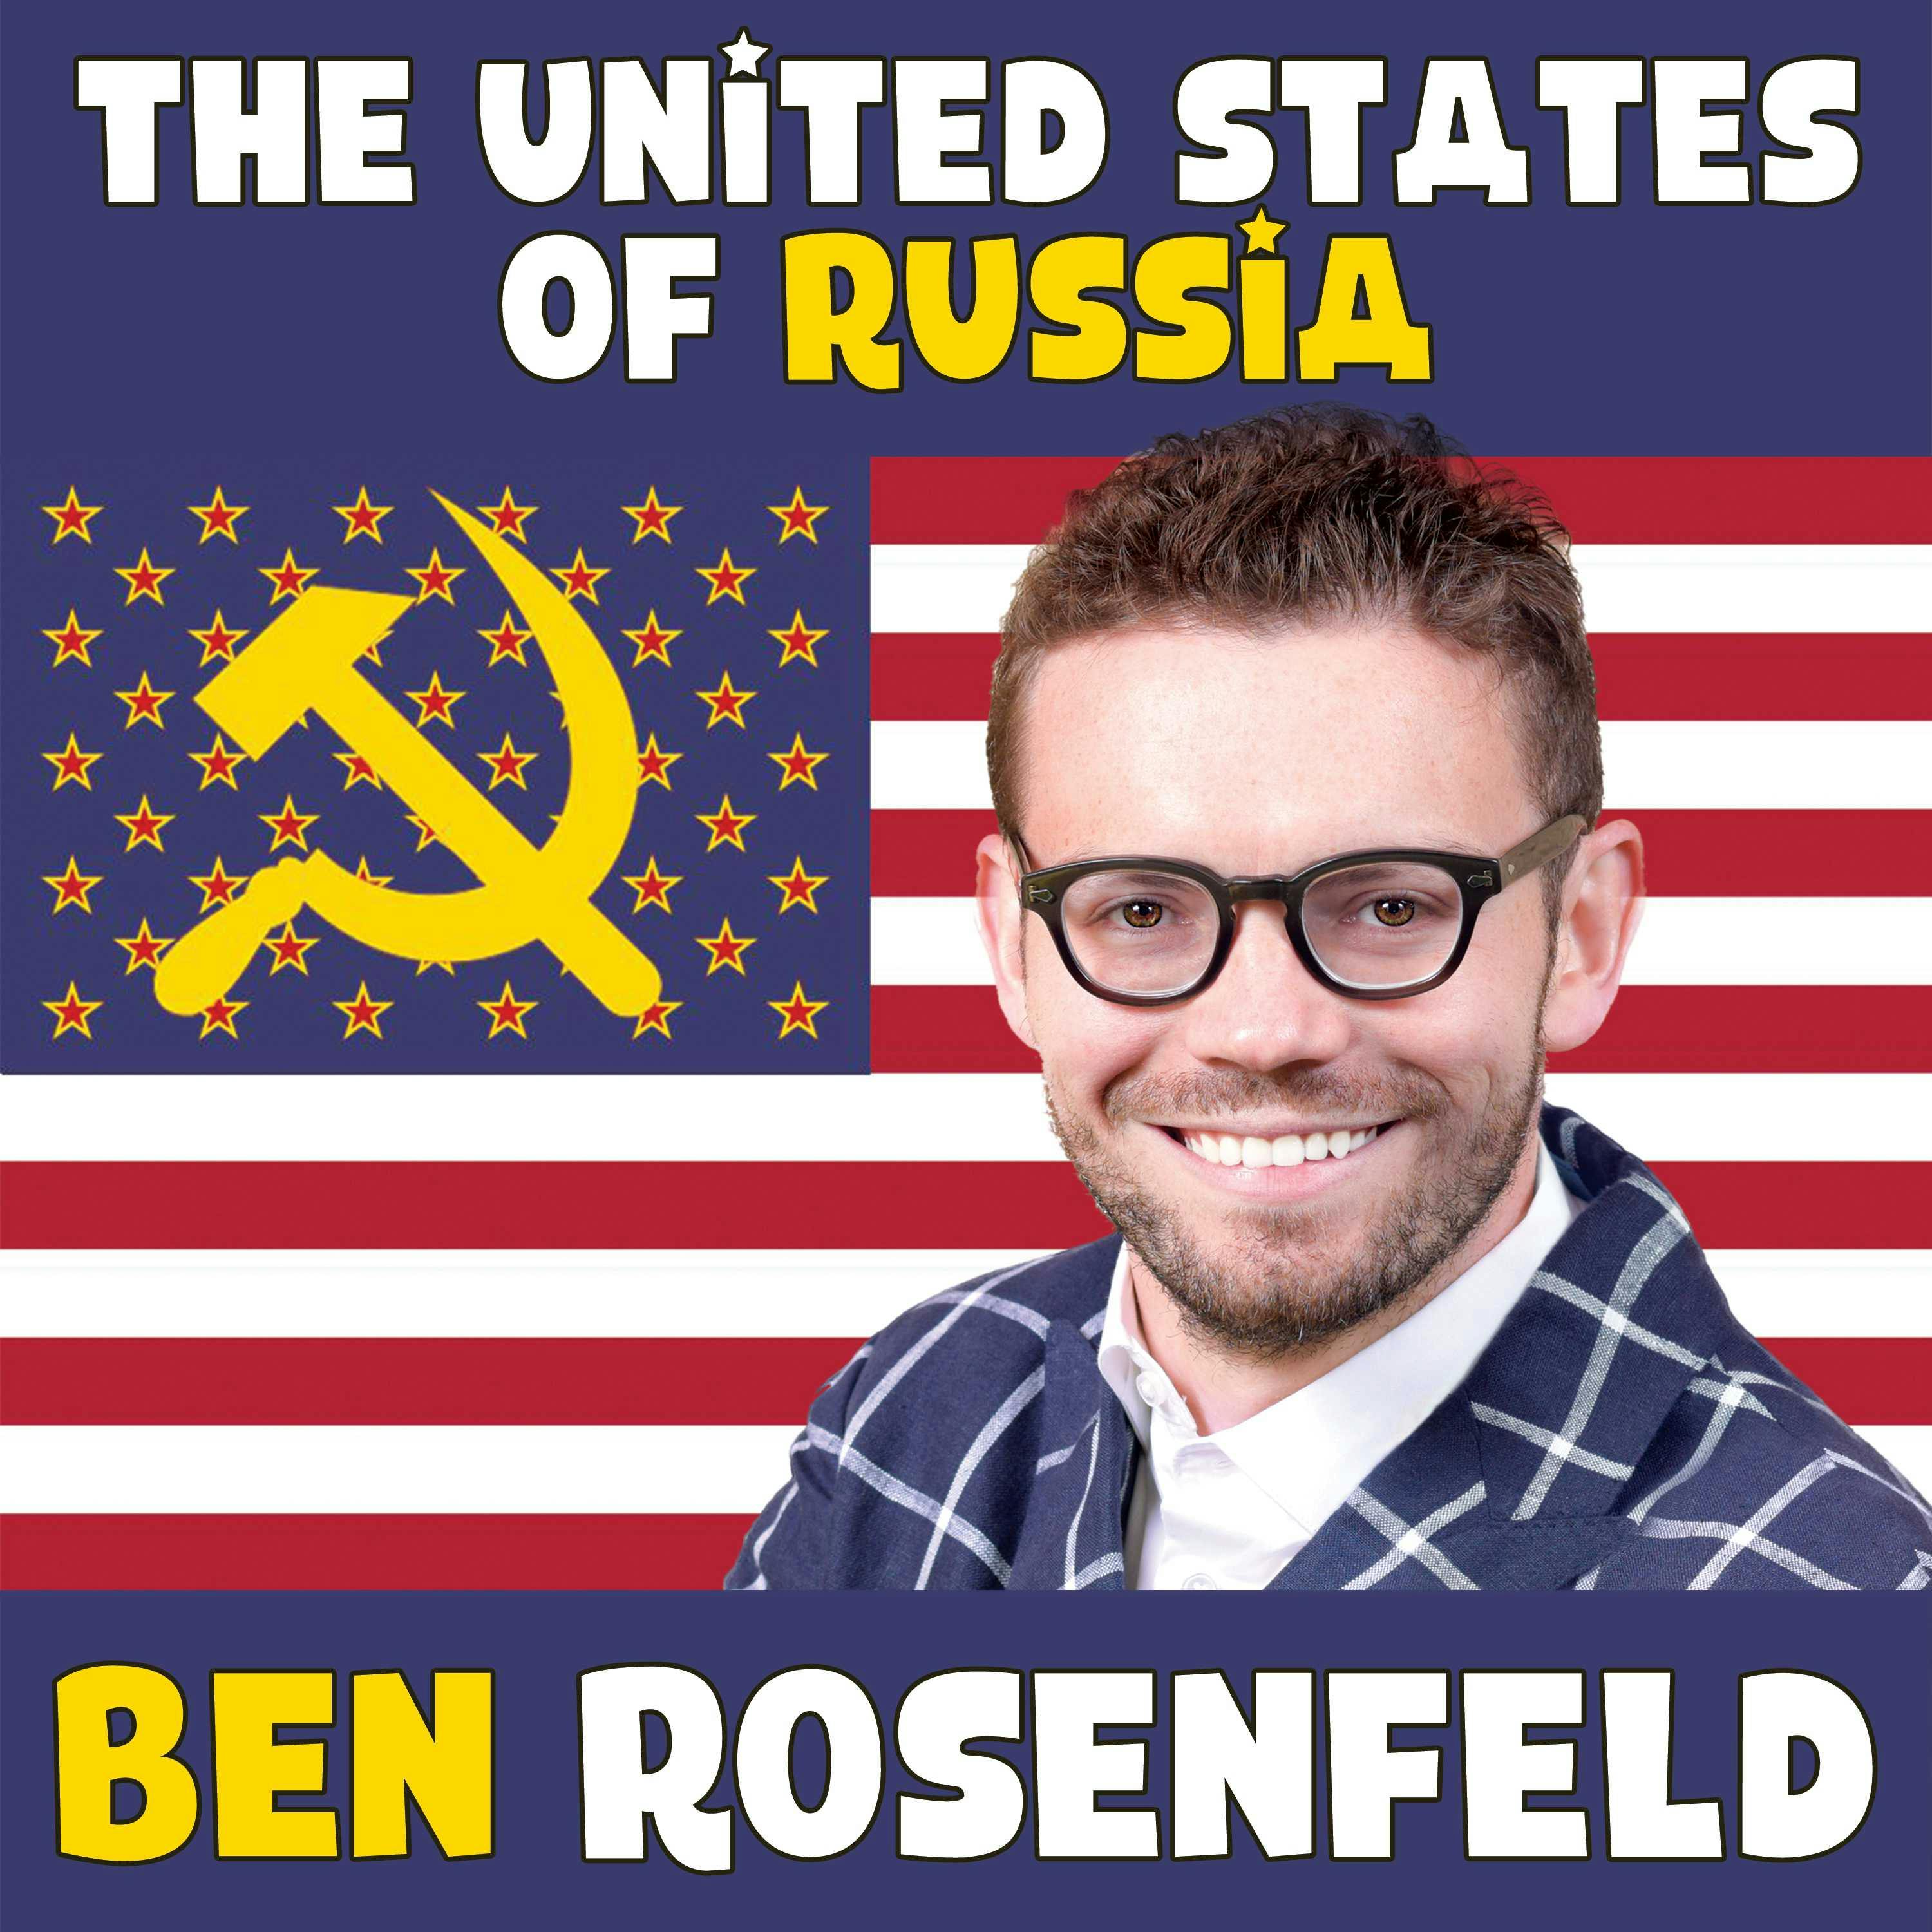 Ben Rosenfeld: The United States of Russia - Ben Rosenfeld